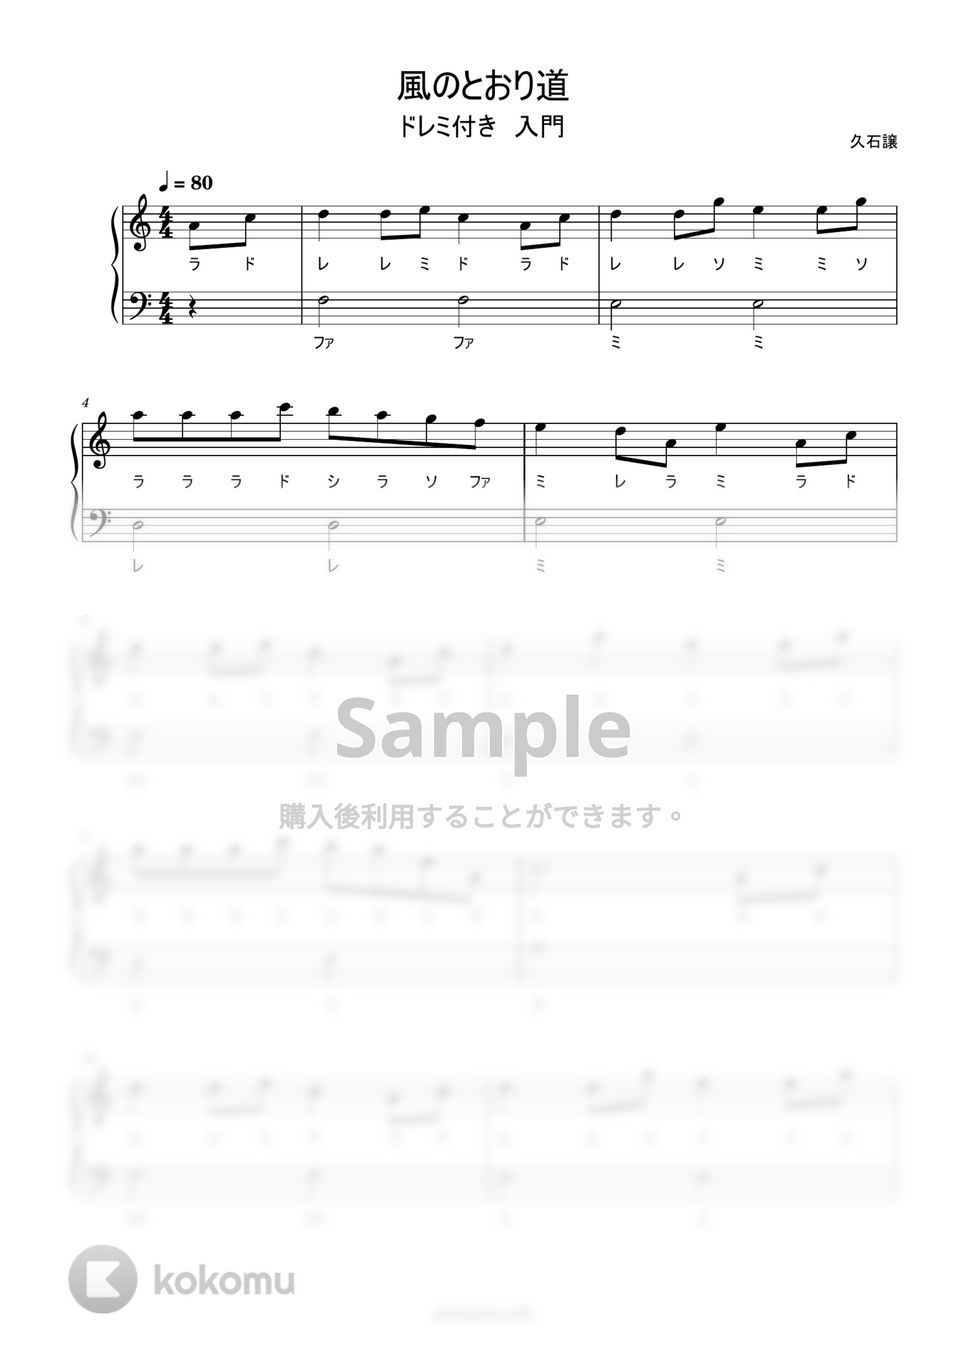 久石譲 - 風の通り道 (ハ長調ドレミ付き簡単楽譜) by ピアノ塾